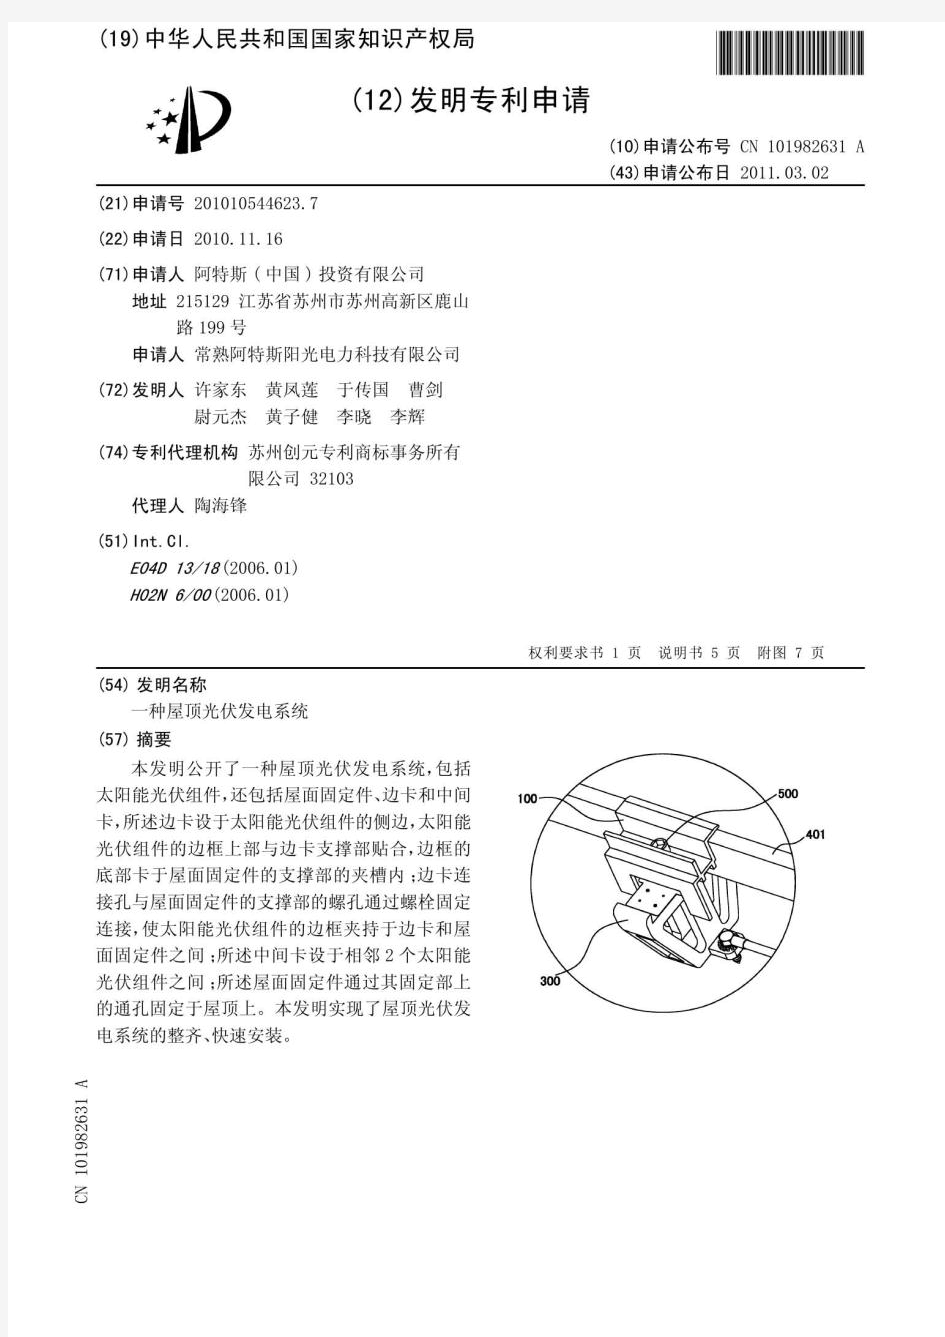 阿特斯专利——屋顶光伏发电系统(支架)